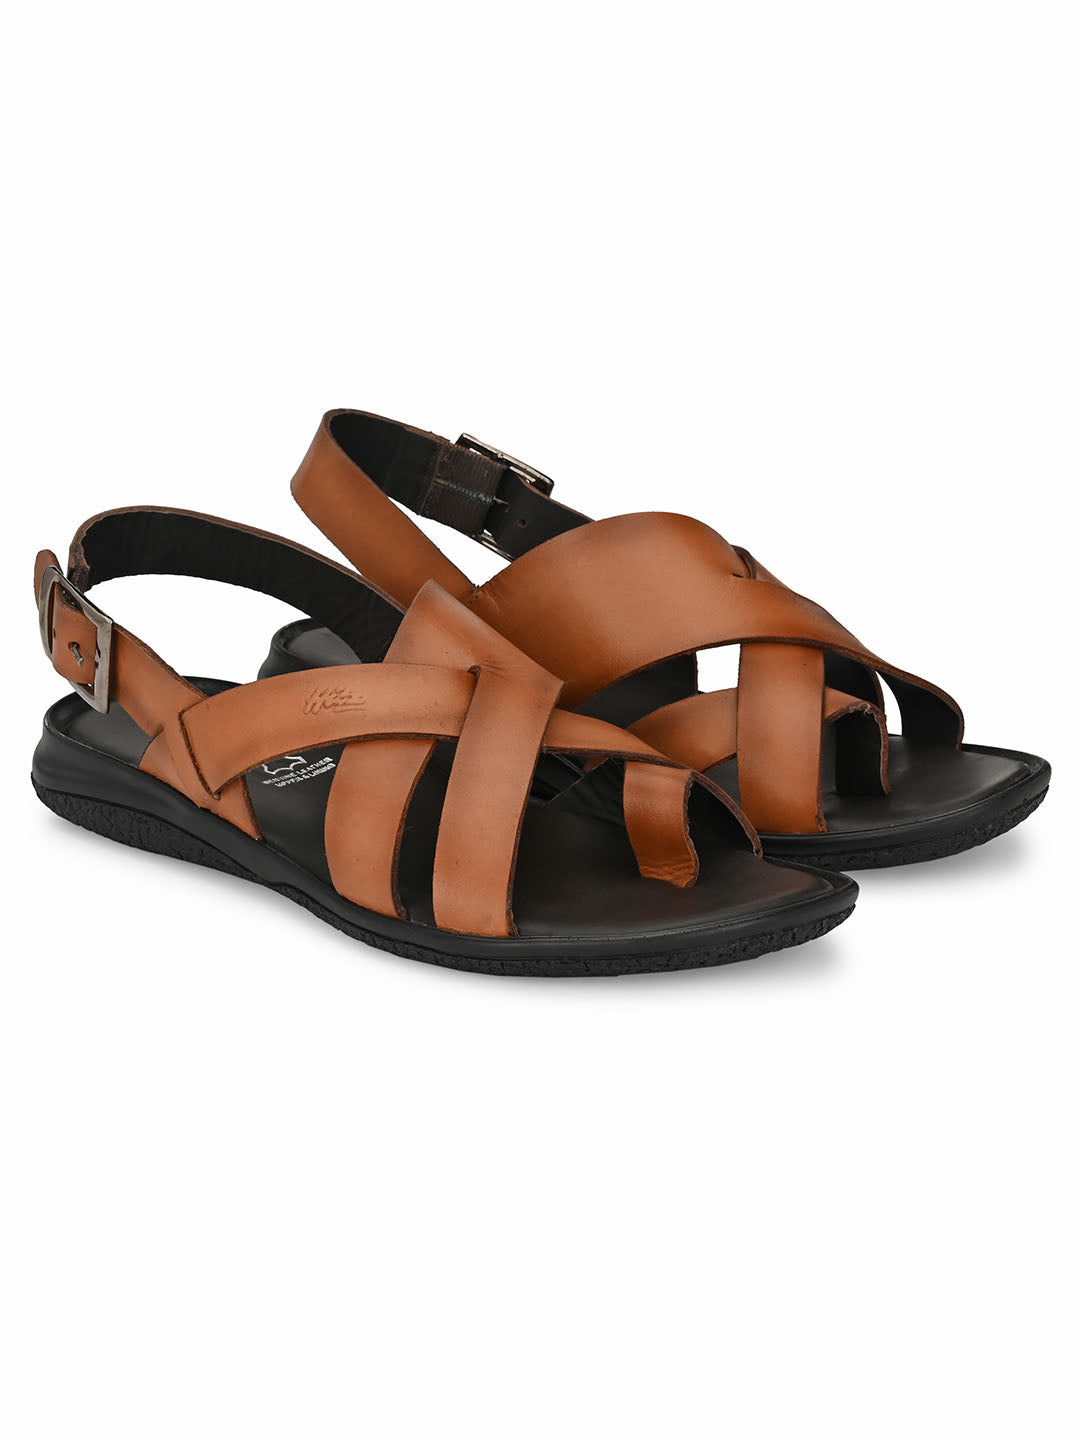 Buy Black Leather Toe Ring Sandals for Men With Adjustable Buckle Strap  Greek Gladiator Strappy Men's Slide Sandals Summer Shoes for Men Online in  India - Etsy